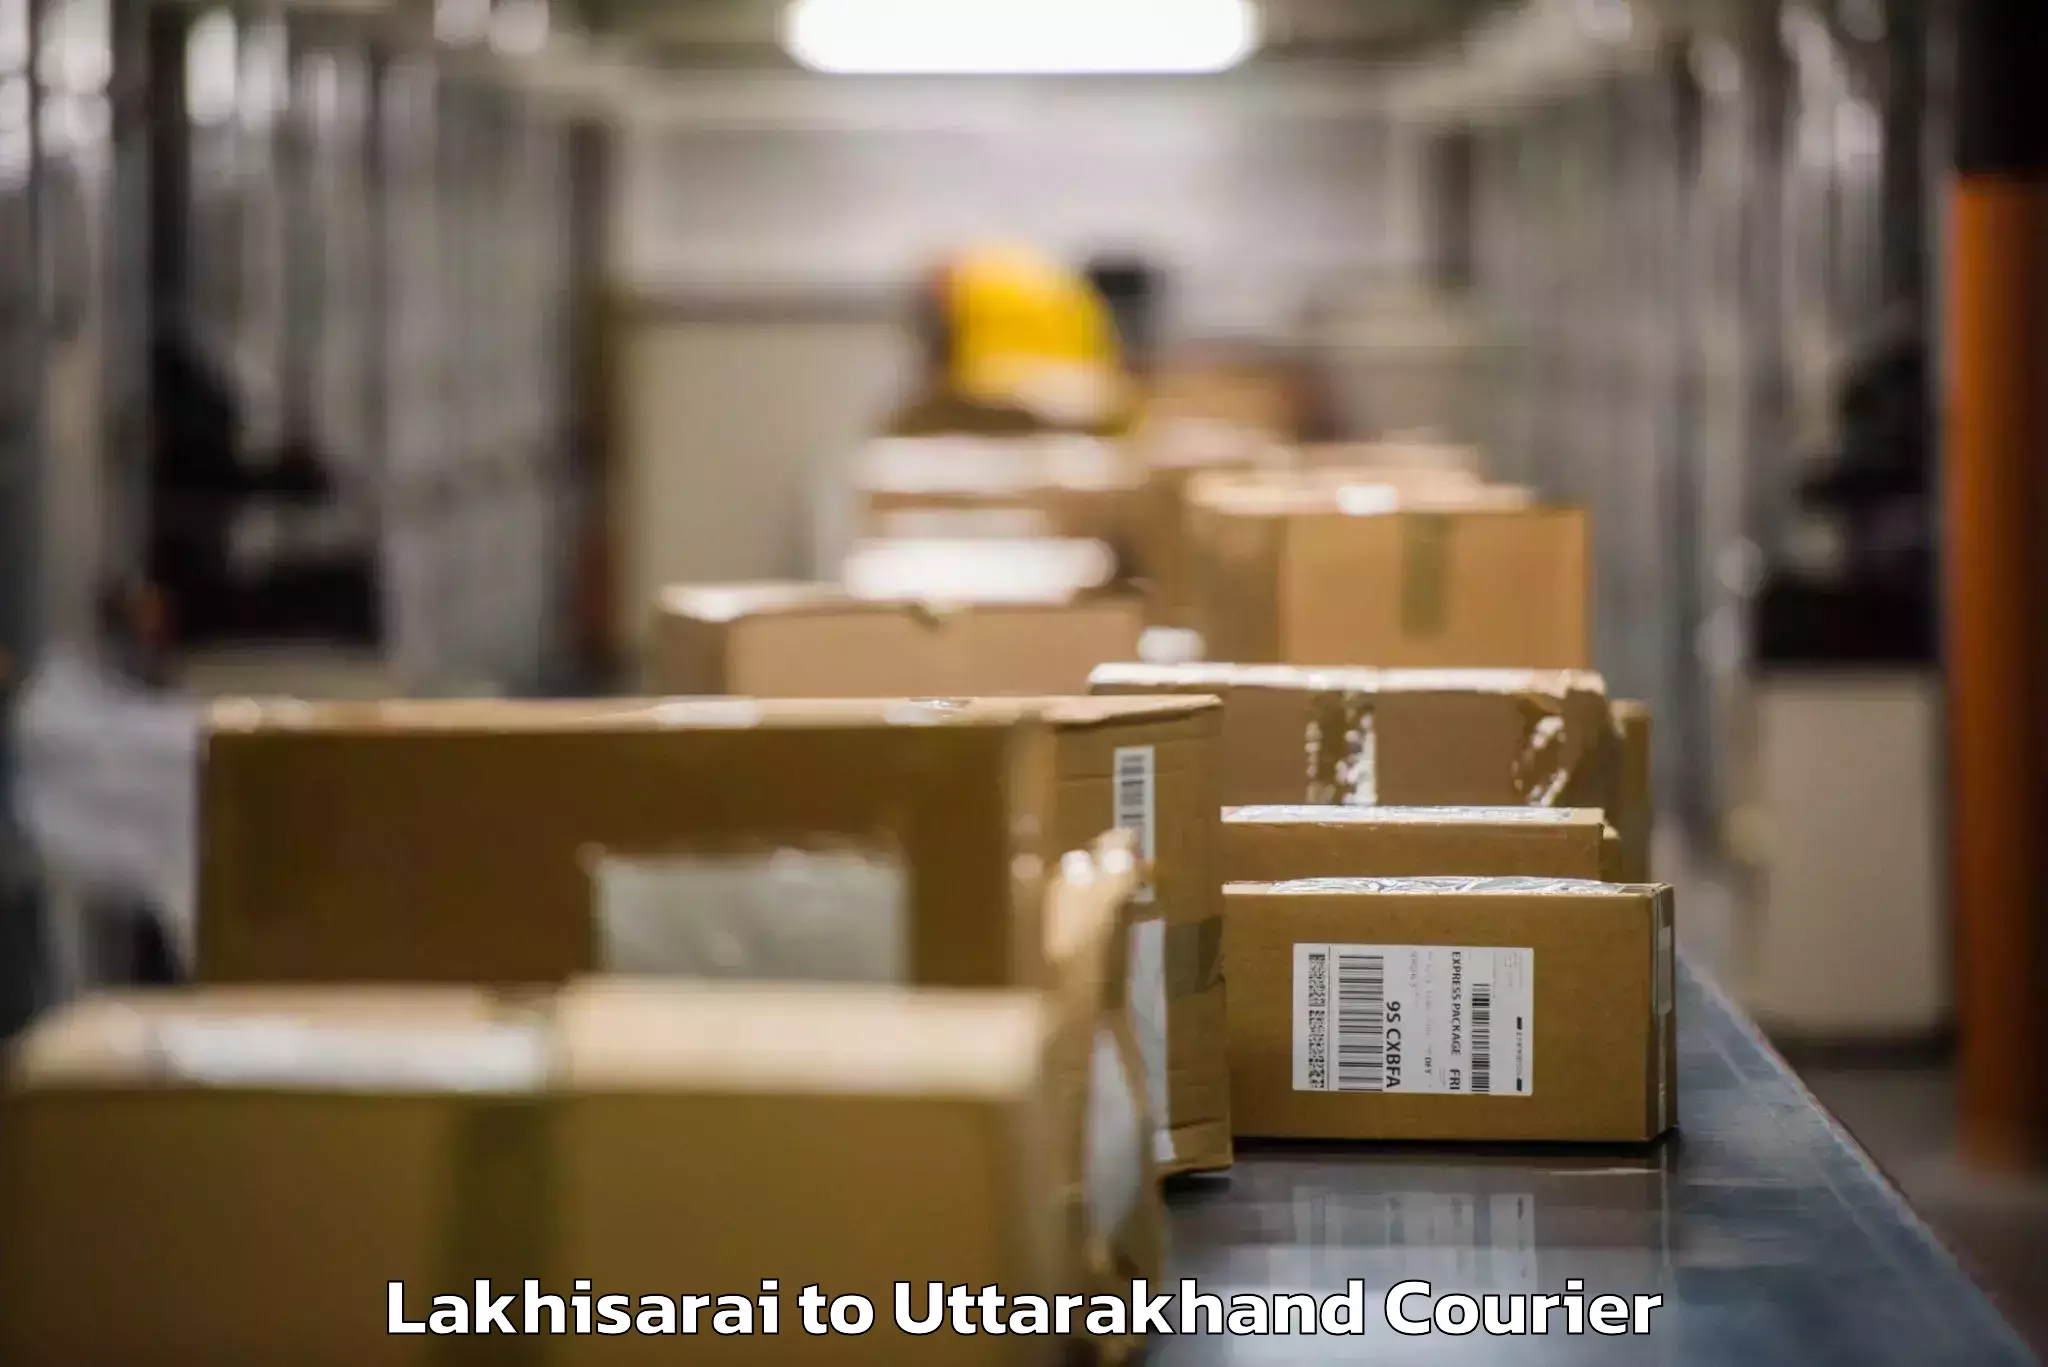 Luggage transport consultancy Lakhisarai to Paithani